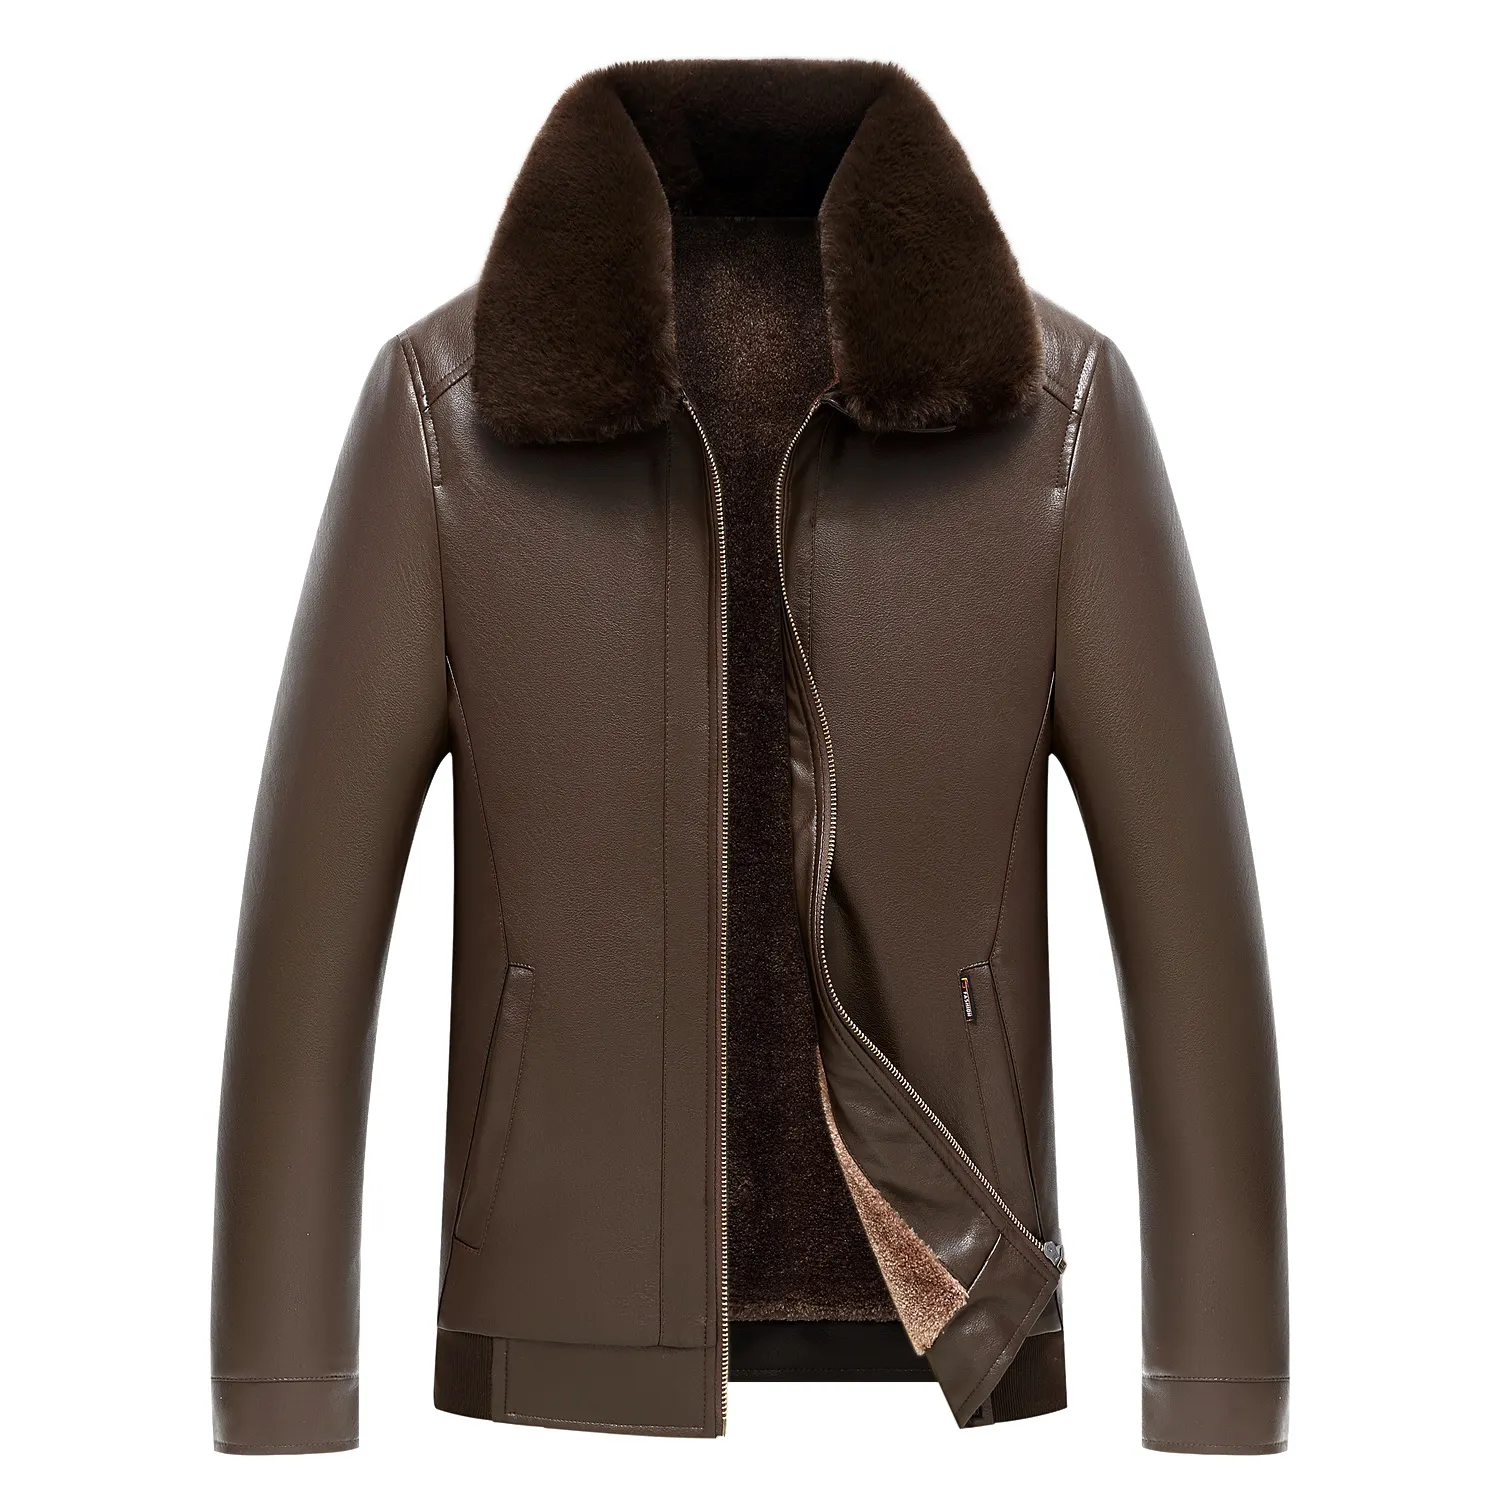 Под заказ, отличное качество, новейший дизайн, купить куртку из искусственной кожи с мехом, мужские зимние куртки из искусственной кожи